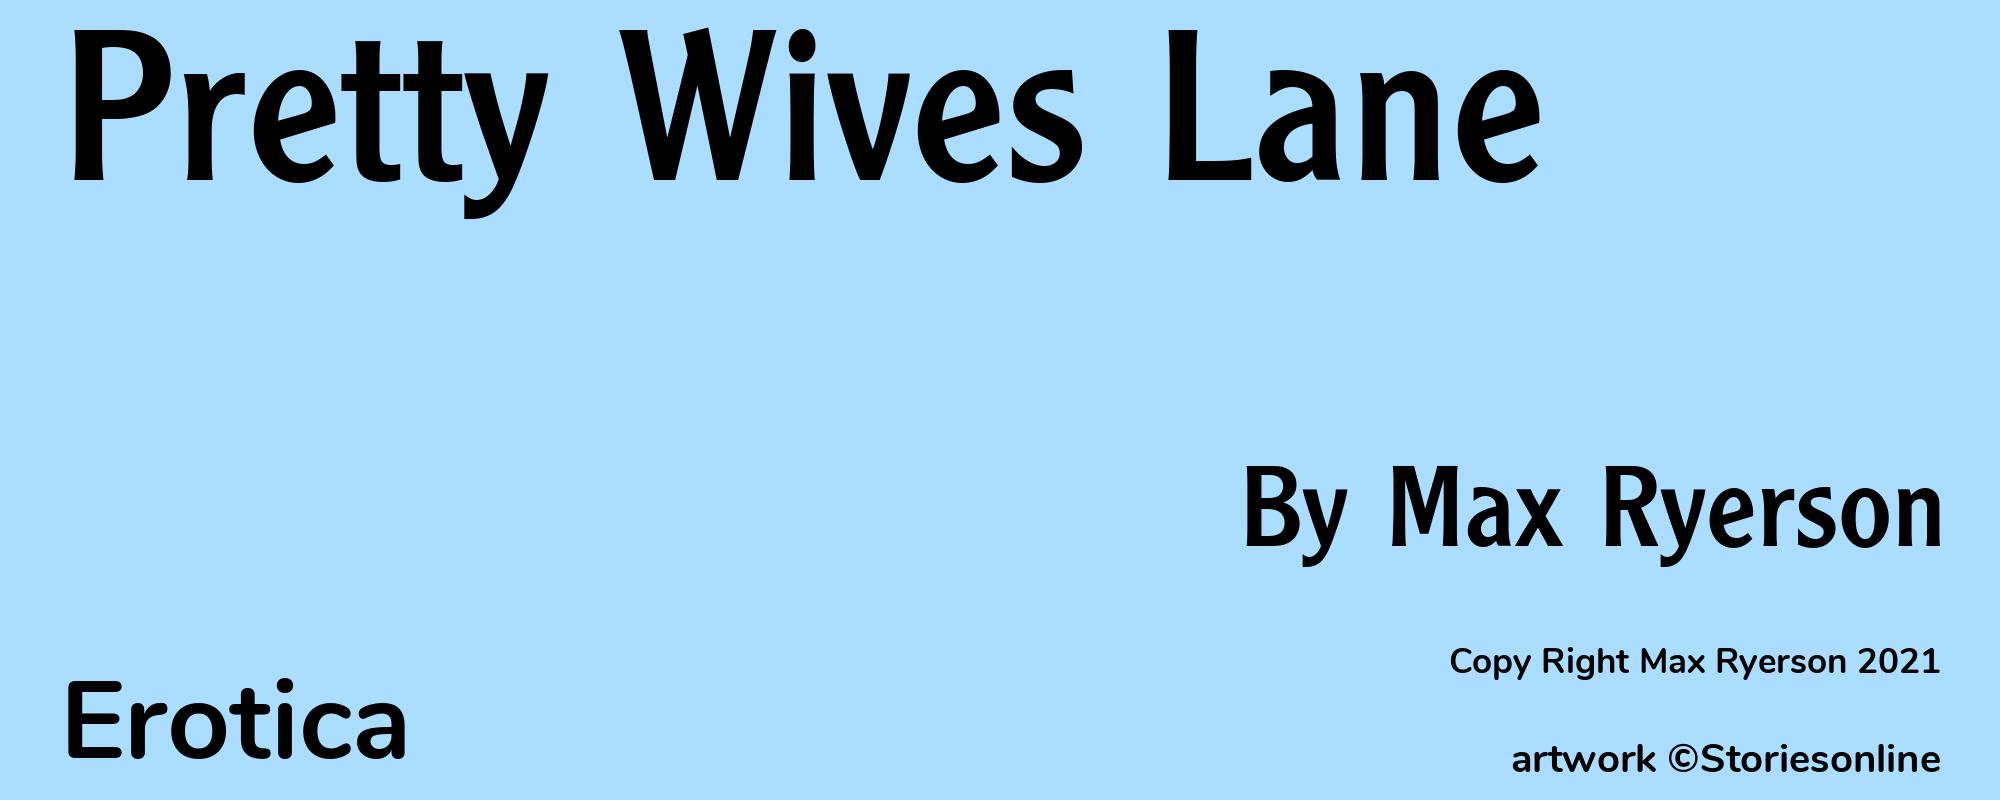 Pretty Wives Lane - Cover